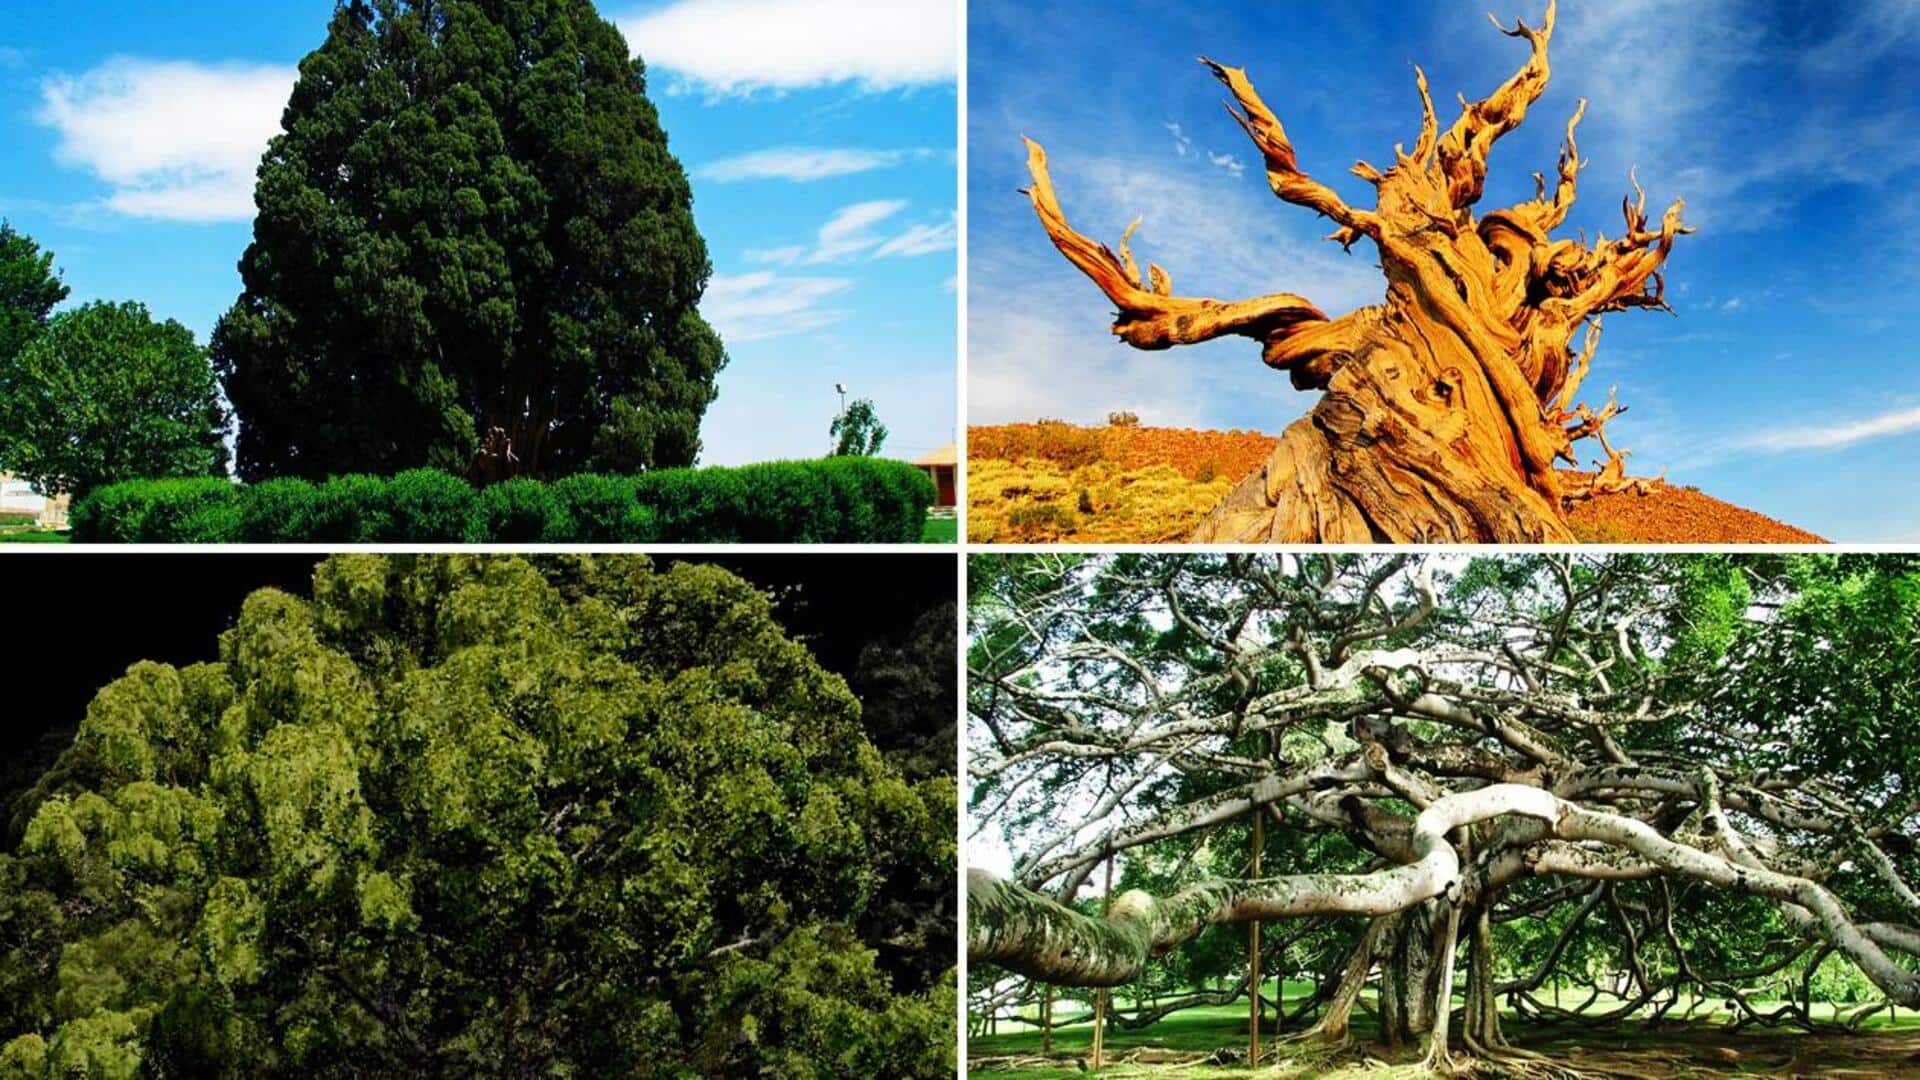 दुनिया के 5 सबसे अनोखे पेड़, जिनके बारे में शायद ही जानते होंगे आप